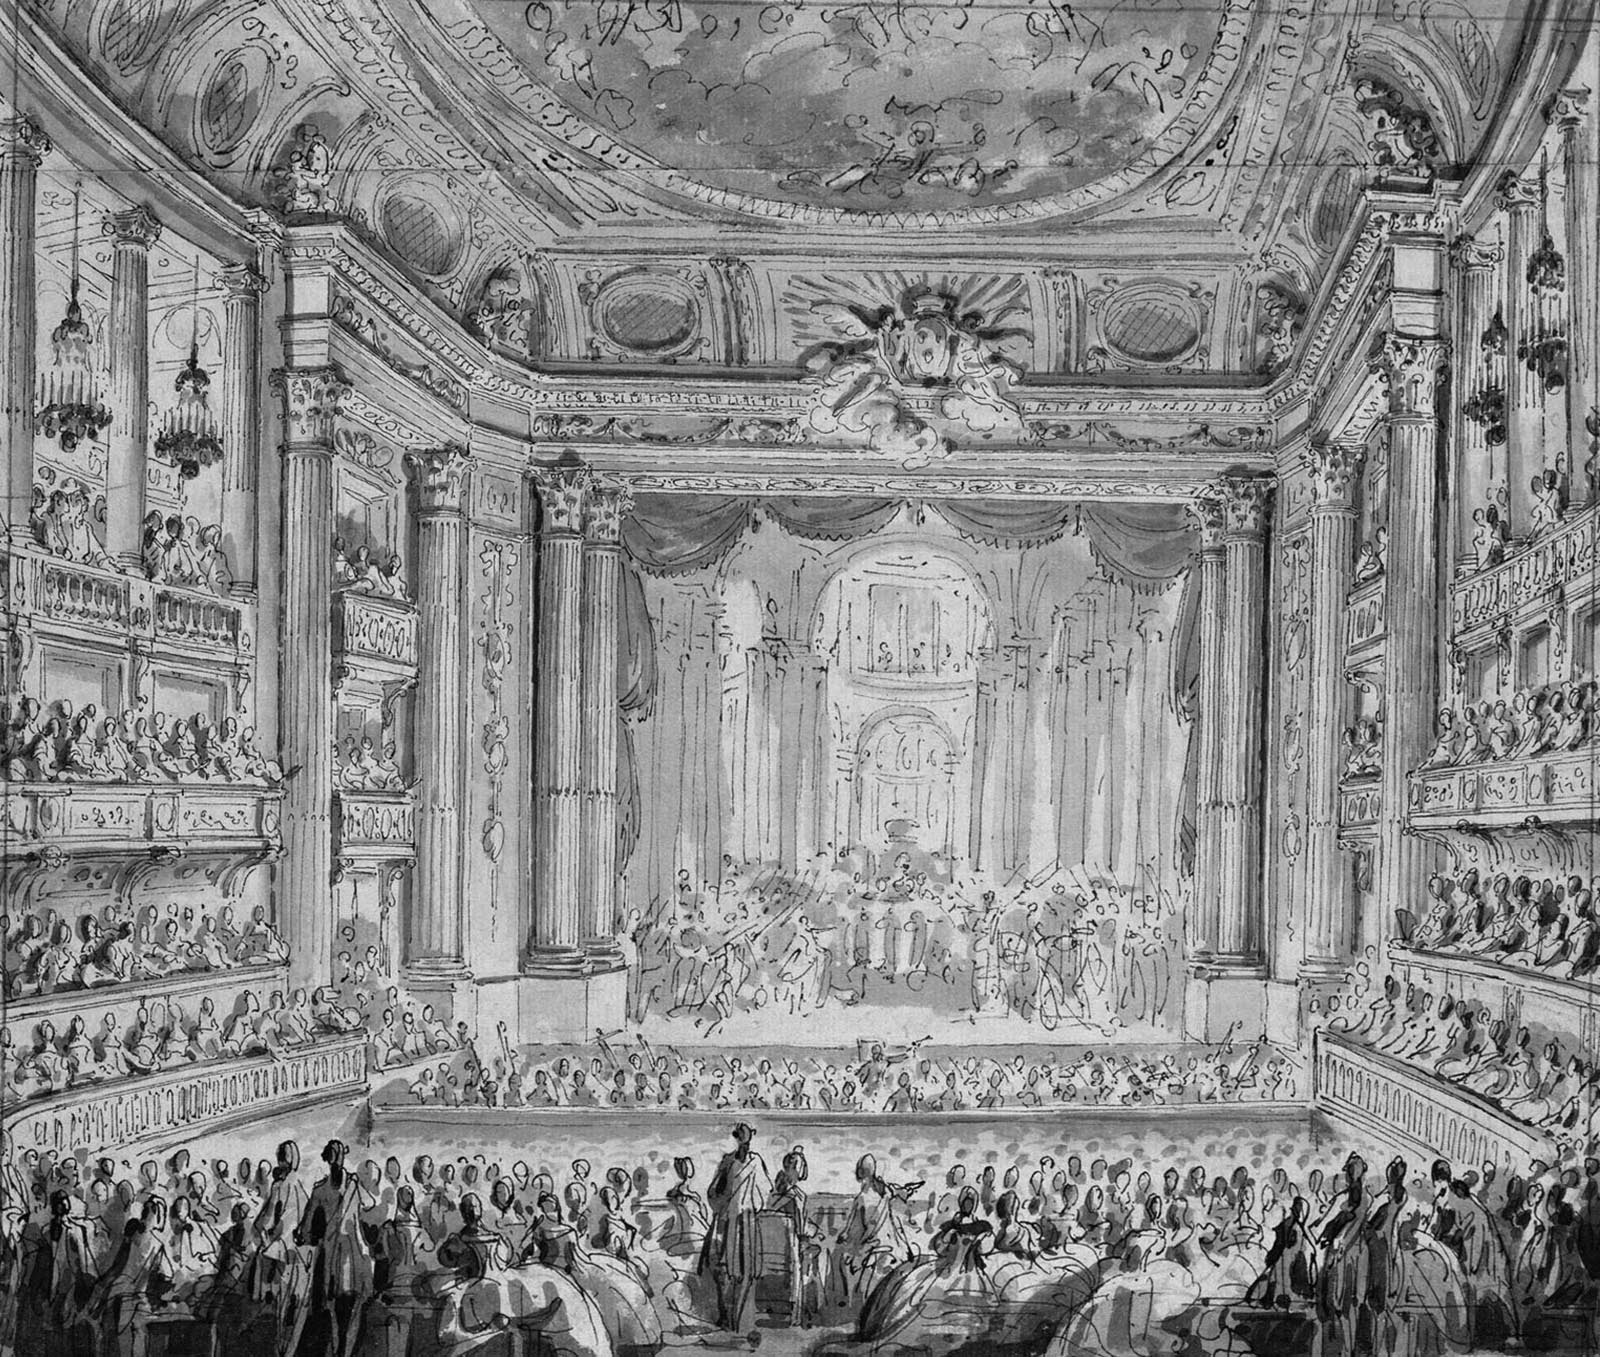 Dessin de J. M. Moreau à l'encre d'une représentation d'un opéra au château de Versailles